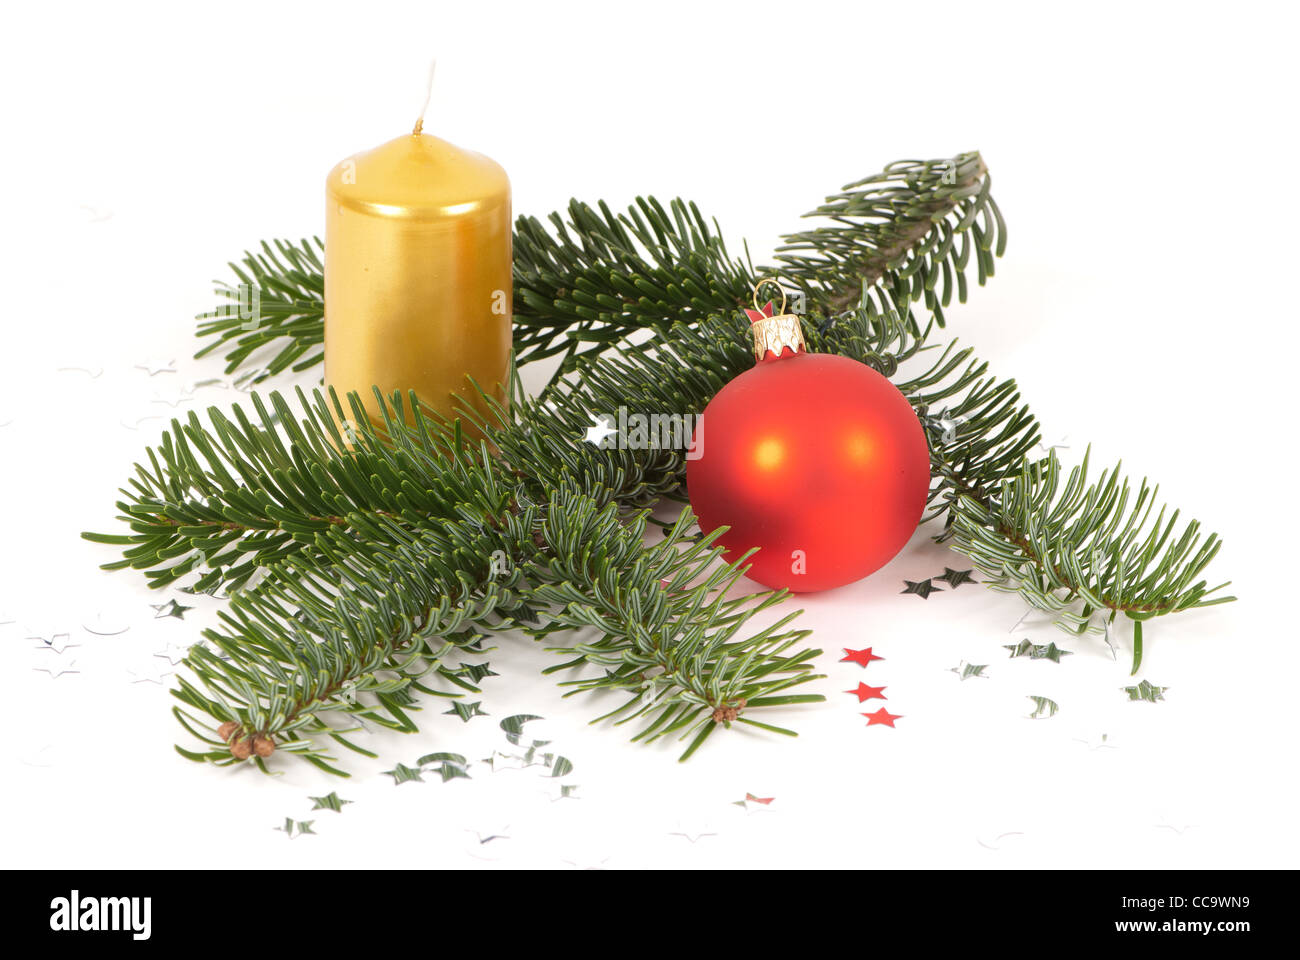 Weihnachtsarrangement mit Tannenzweig, eine Weihnachtskugel und eine gelbe  Kerze Stockfotografie - Alamy